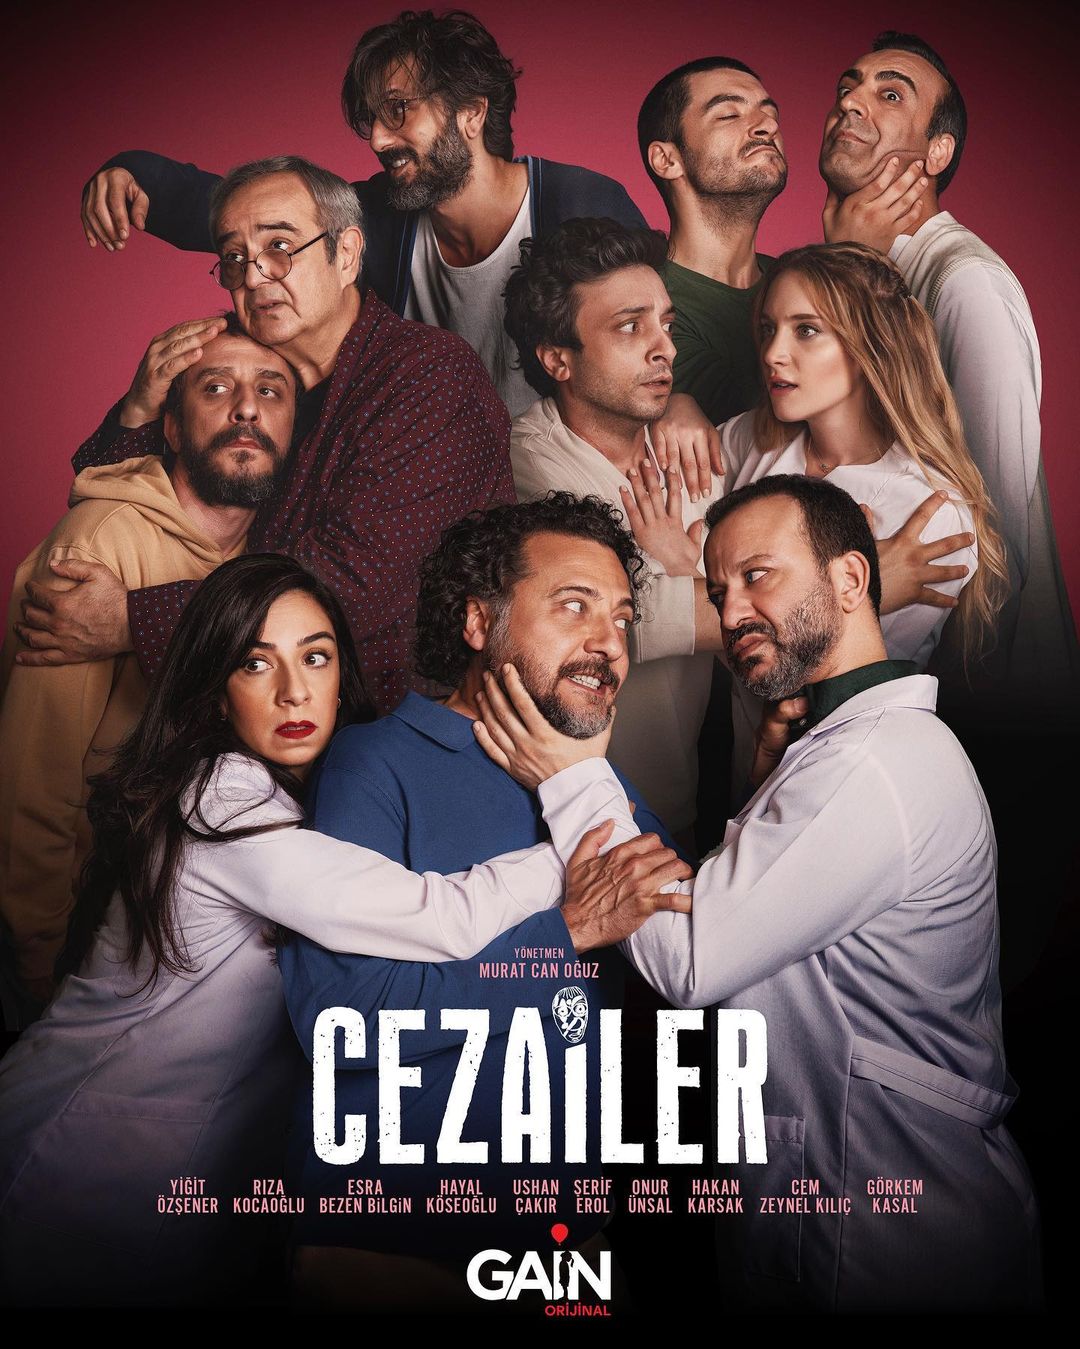 TV ratings for Cezailer in Australia. Gain TV series